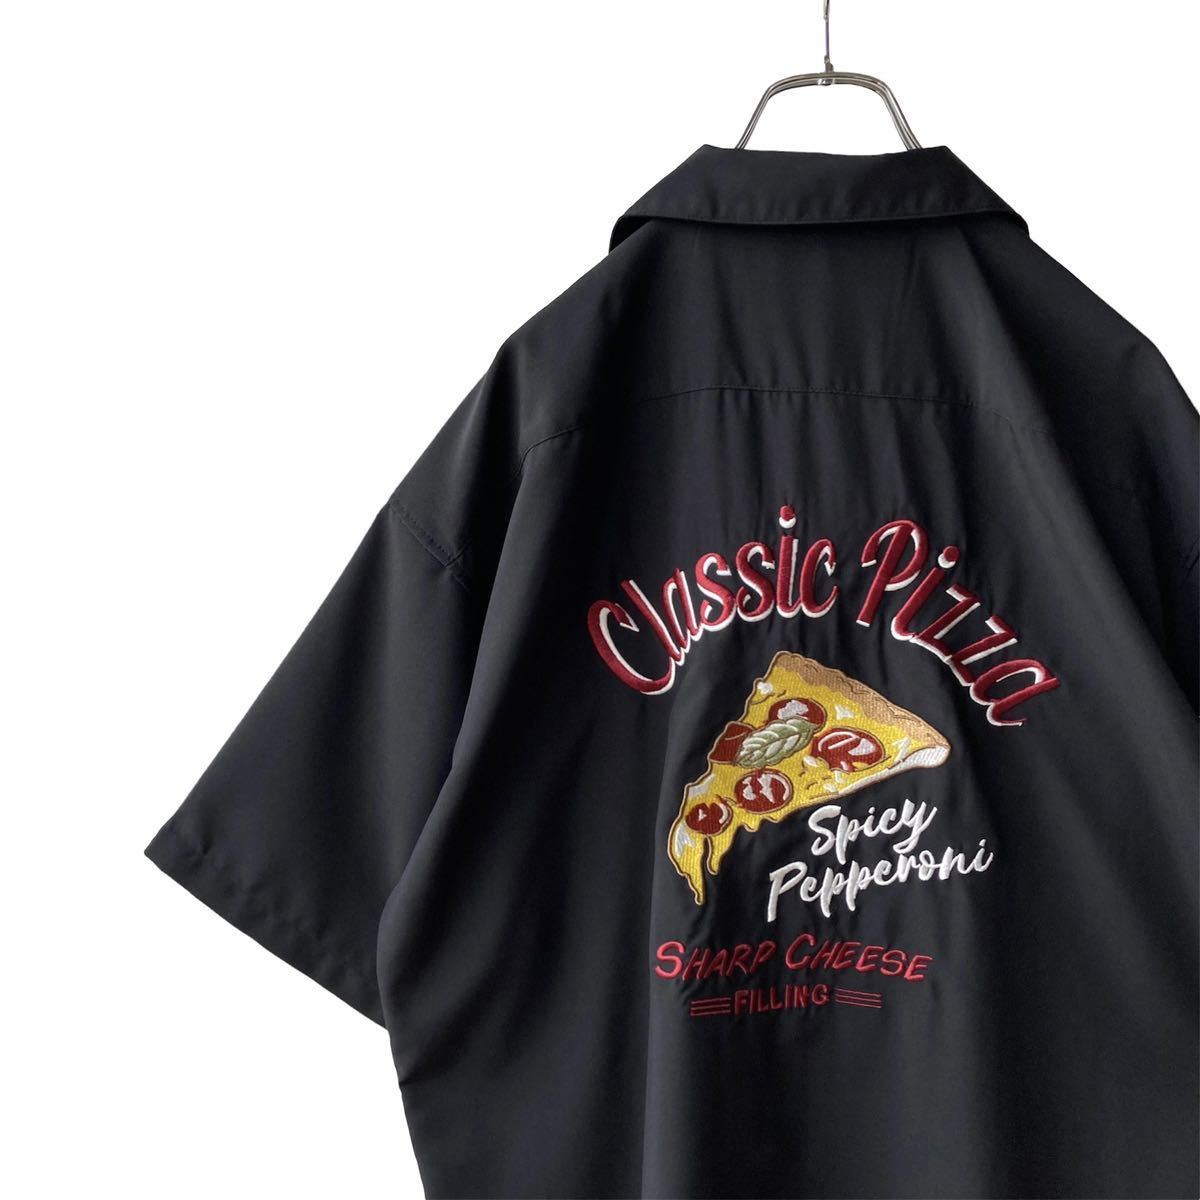 新品 レトロ【クラシックピザ】刺繍ボウリングシャツ XL ブラック ポリシャツ 半袖 オープンカラー ボーリングシャツ ビッグシルエット 1